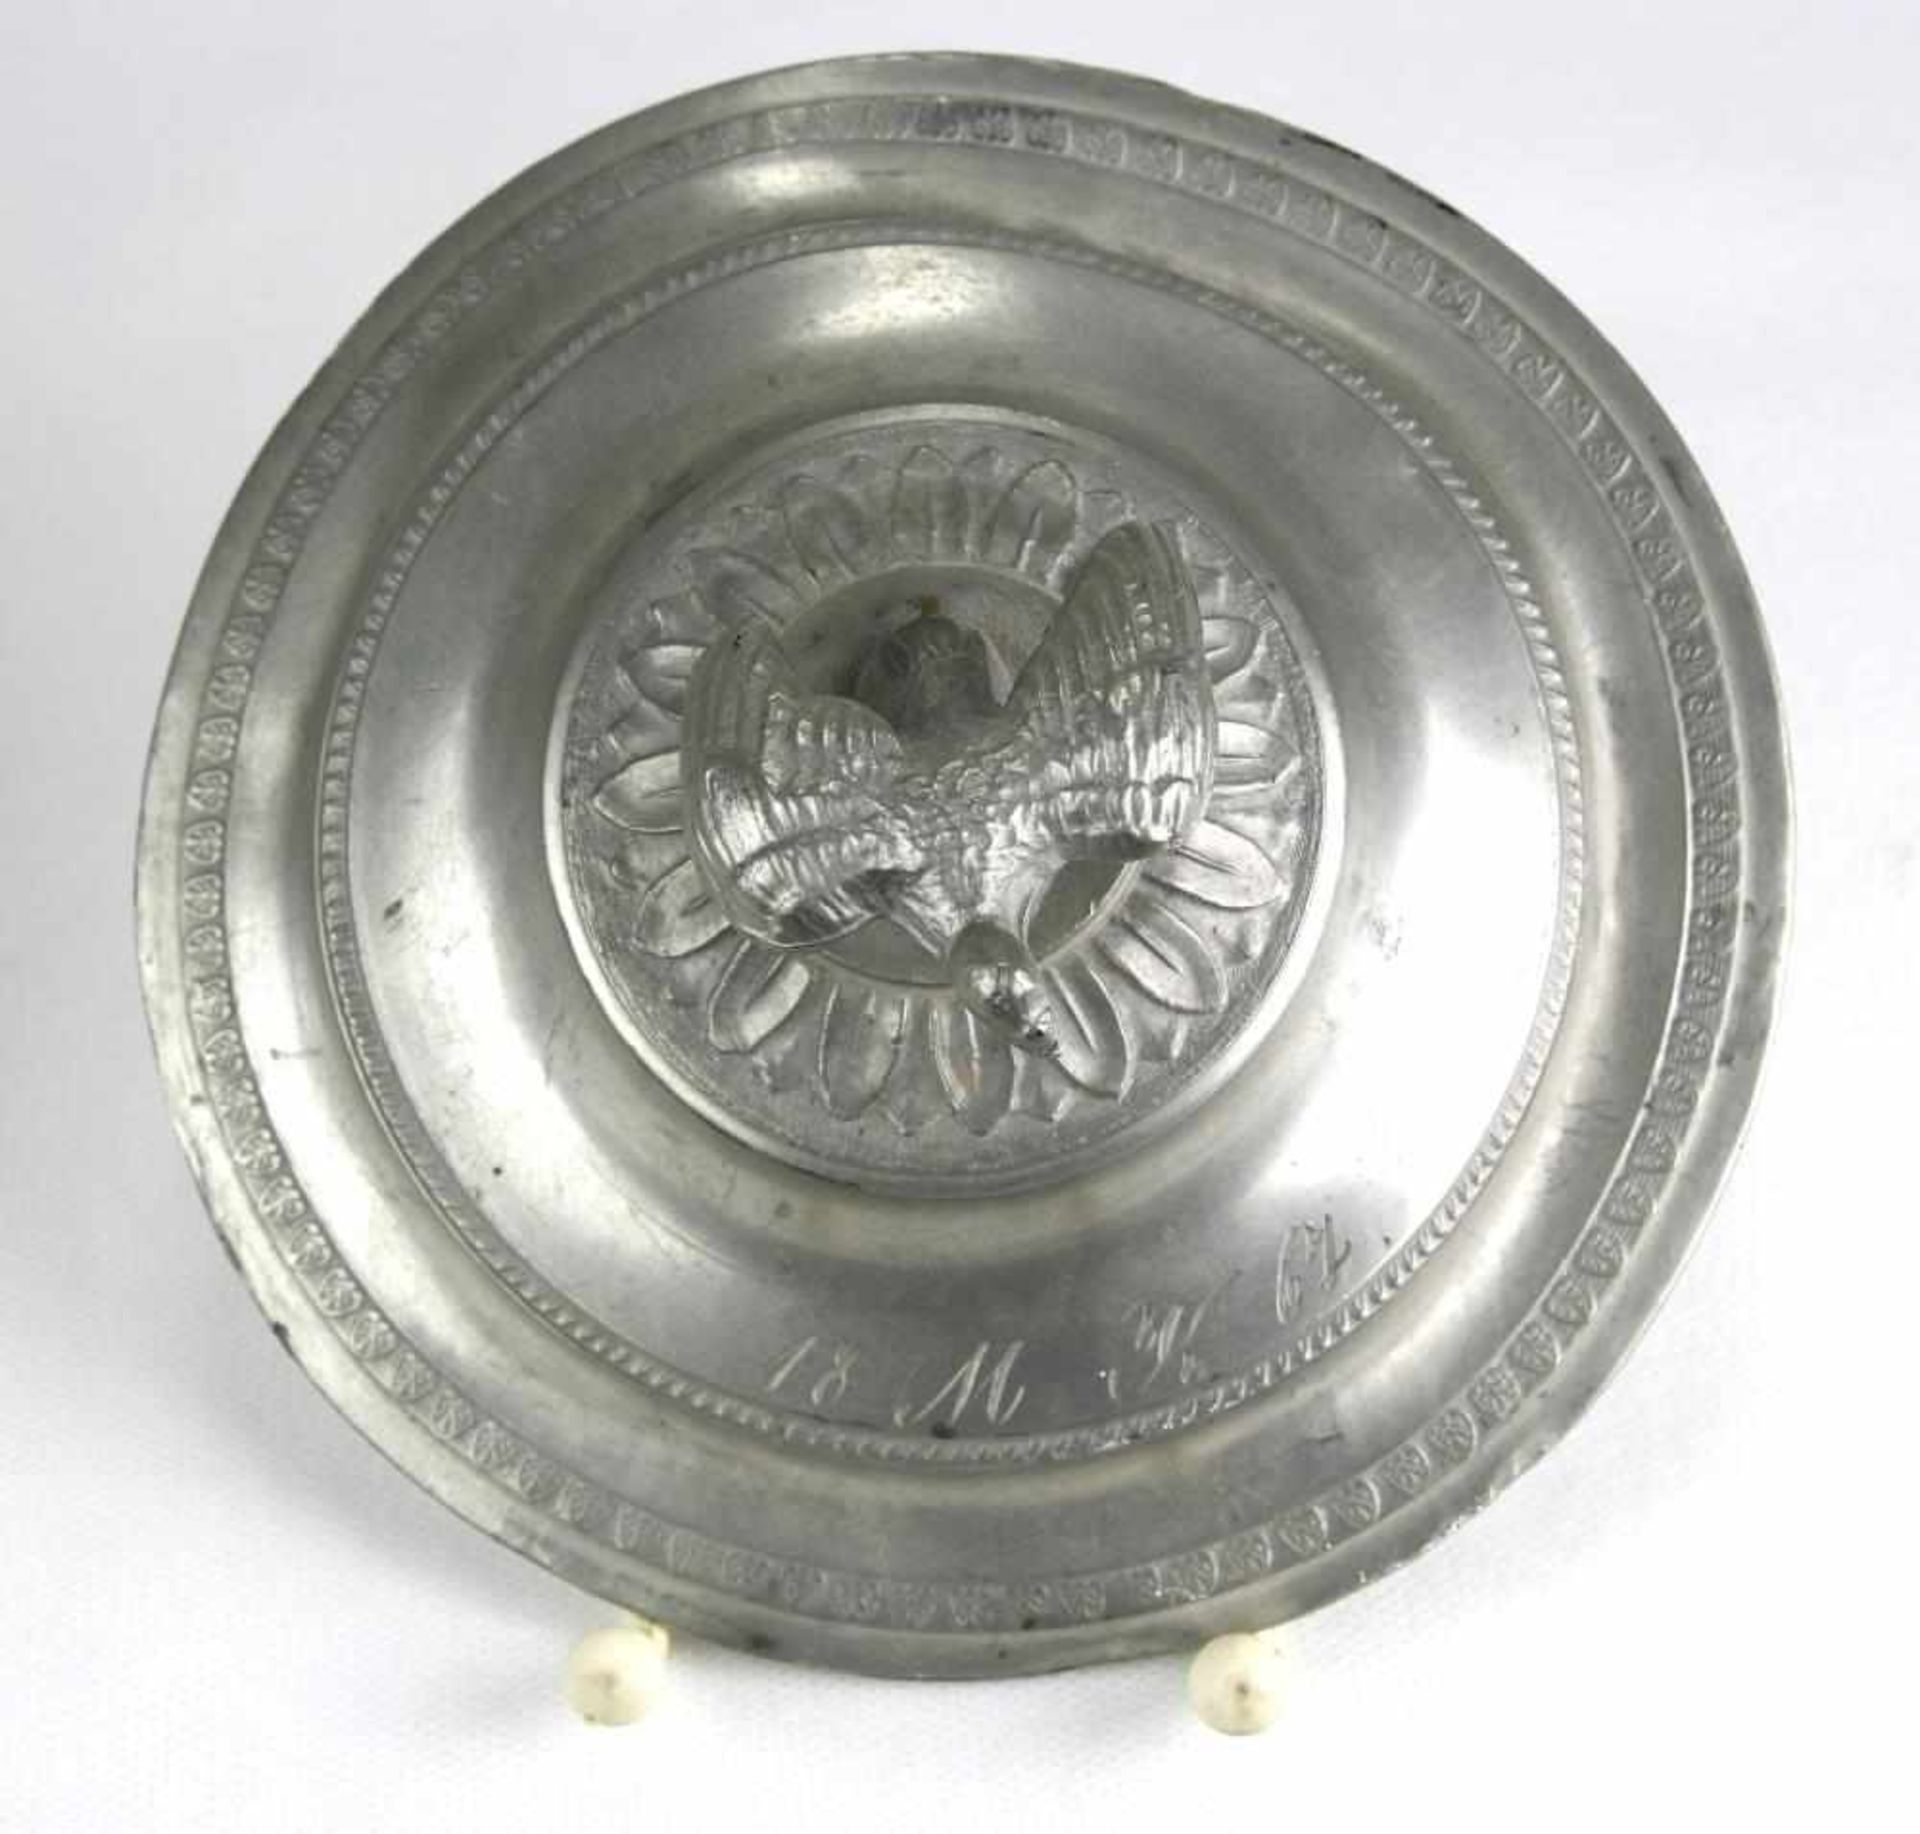 Taufgefäß. 19. Jahrhundert. Zinn. Initialen und Datum 1867. Durchmesser ca. 15 cm, Höhe ca. 13,5 cm. - Bild 4 aus 5